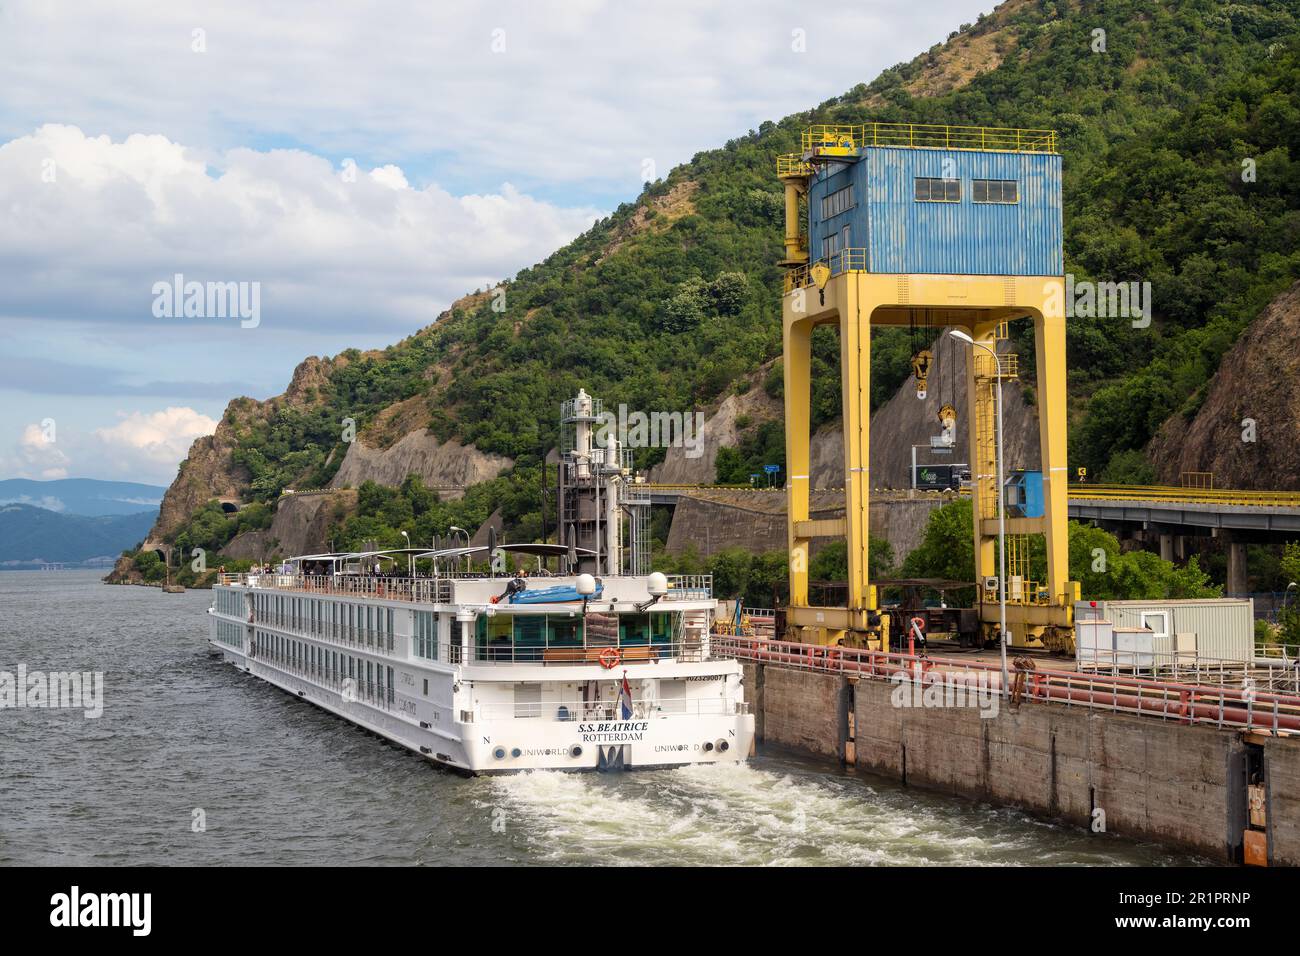 Die Schleusen in der Eisentor-Schlucht an der Donau zwischen Serbien und Rumänien. Versorgt die Region auch mit Strom aus Wasserkraft. S.S. Beatrice kommt durch. Stockfoto